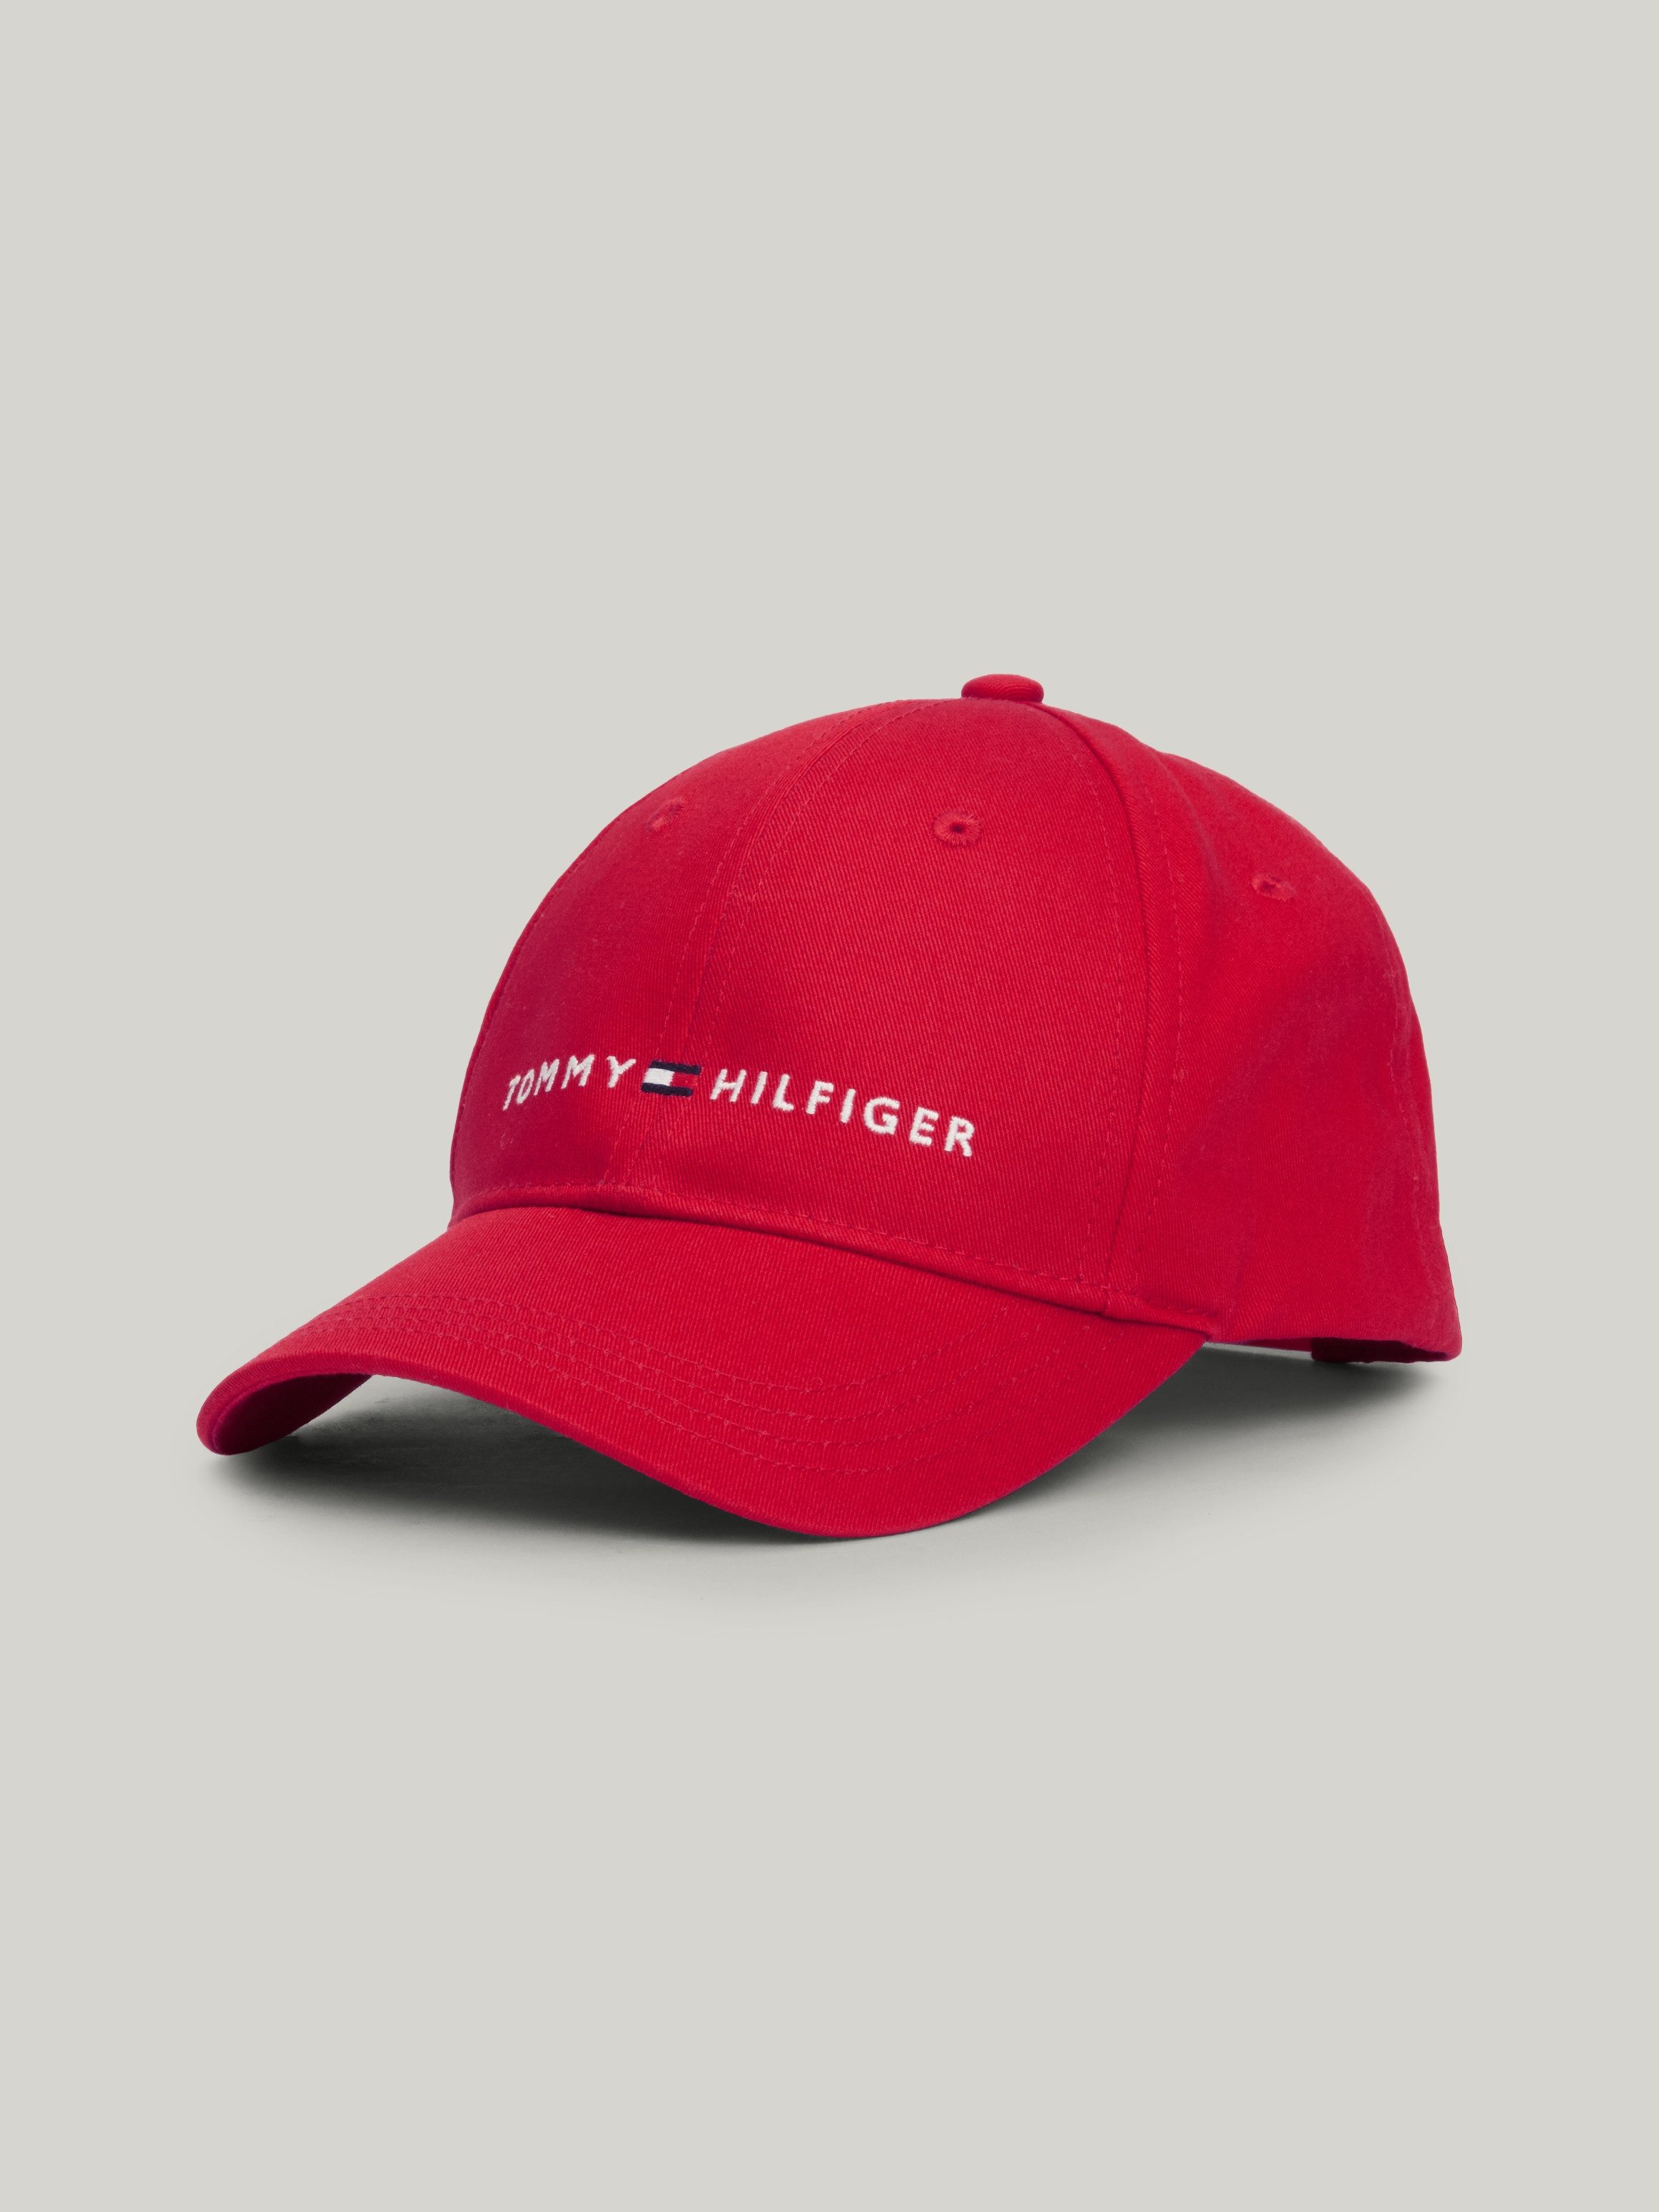 Tommy Hilfiger Snapback cap ESSENTIAL CAP